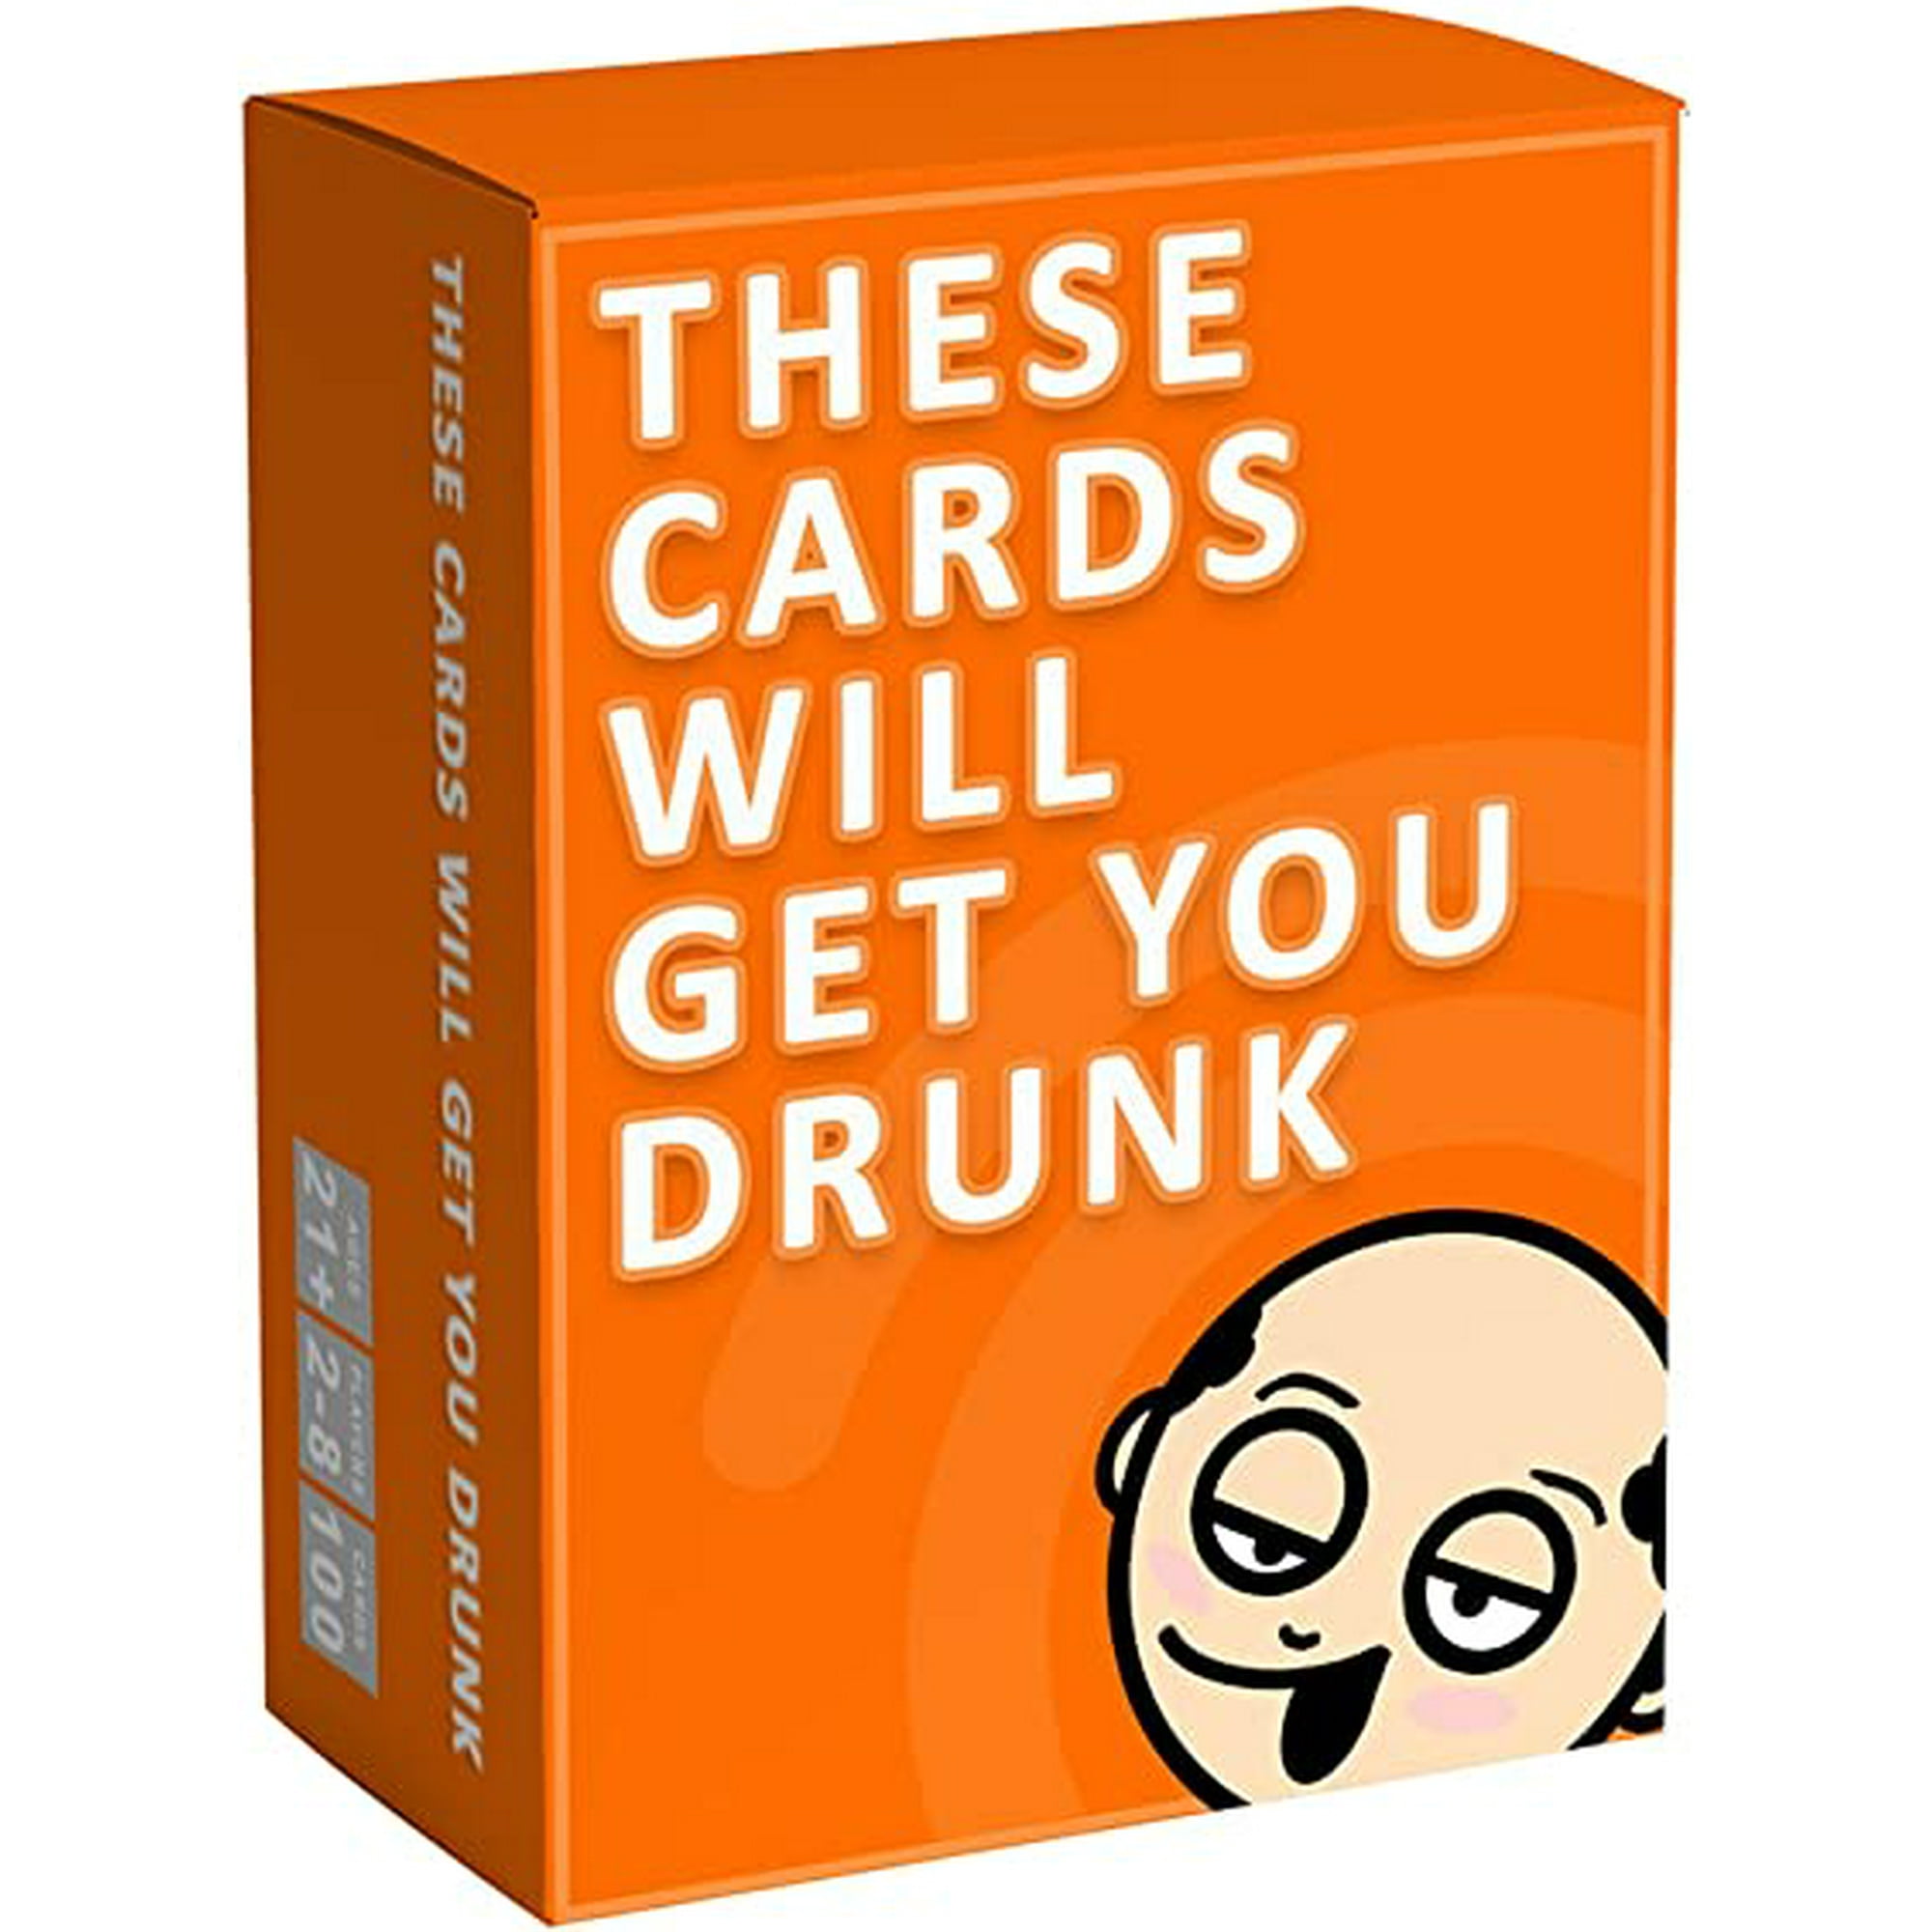 Divertidos juegos de bebida para adultos: ¡Comienza la fiesta con ¡Vamos a  emborracharnos!